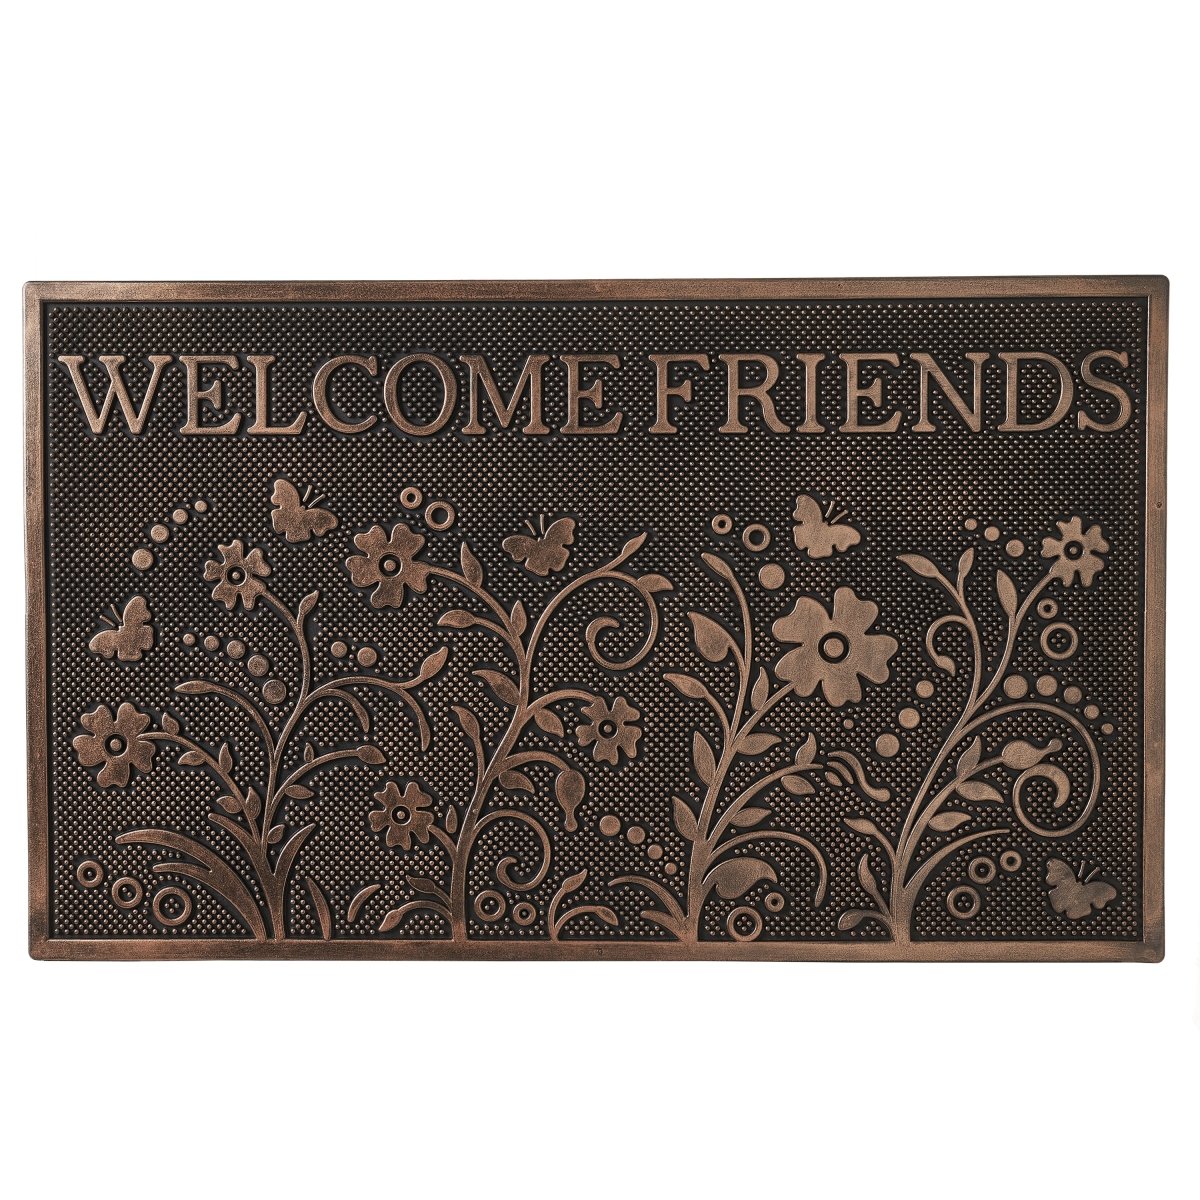 Felpudo personalizado Welcome Friends, 60 x 40 cm, color marrón